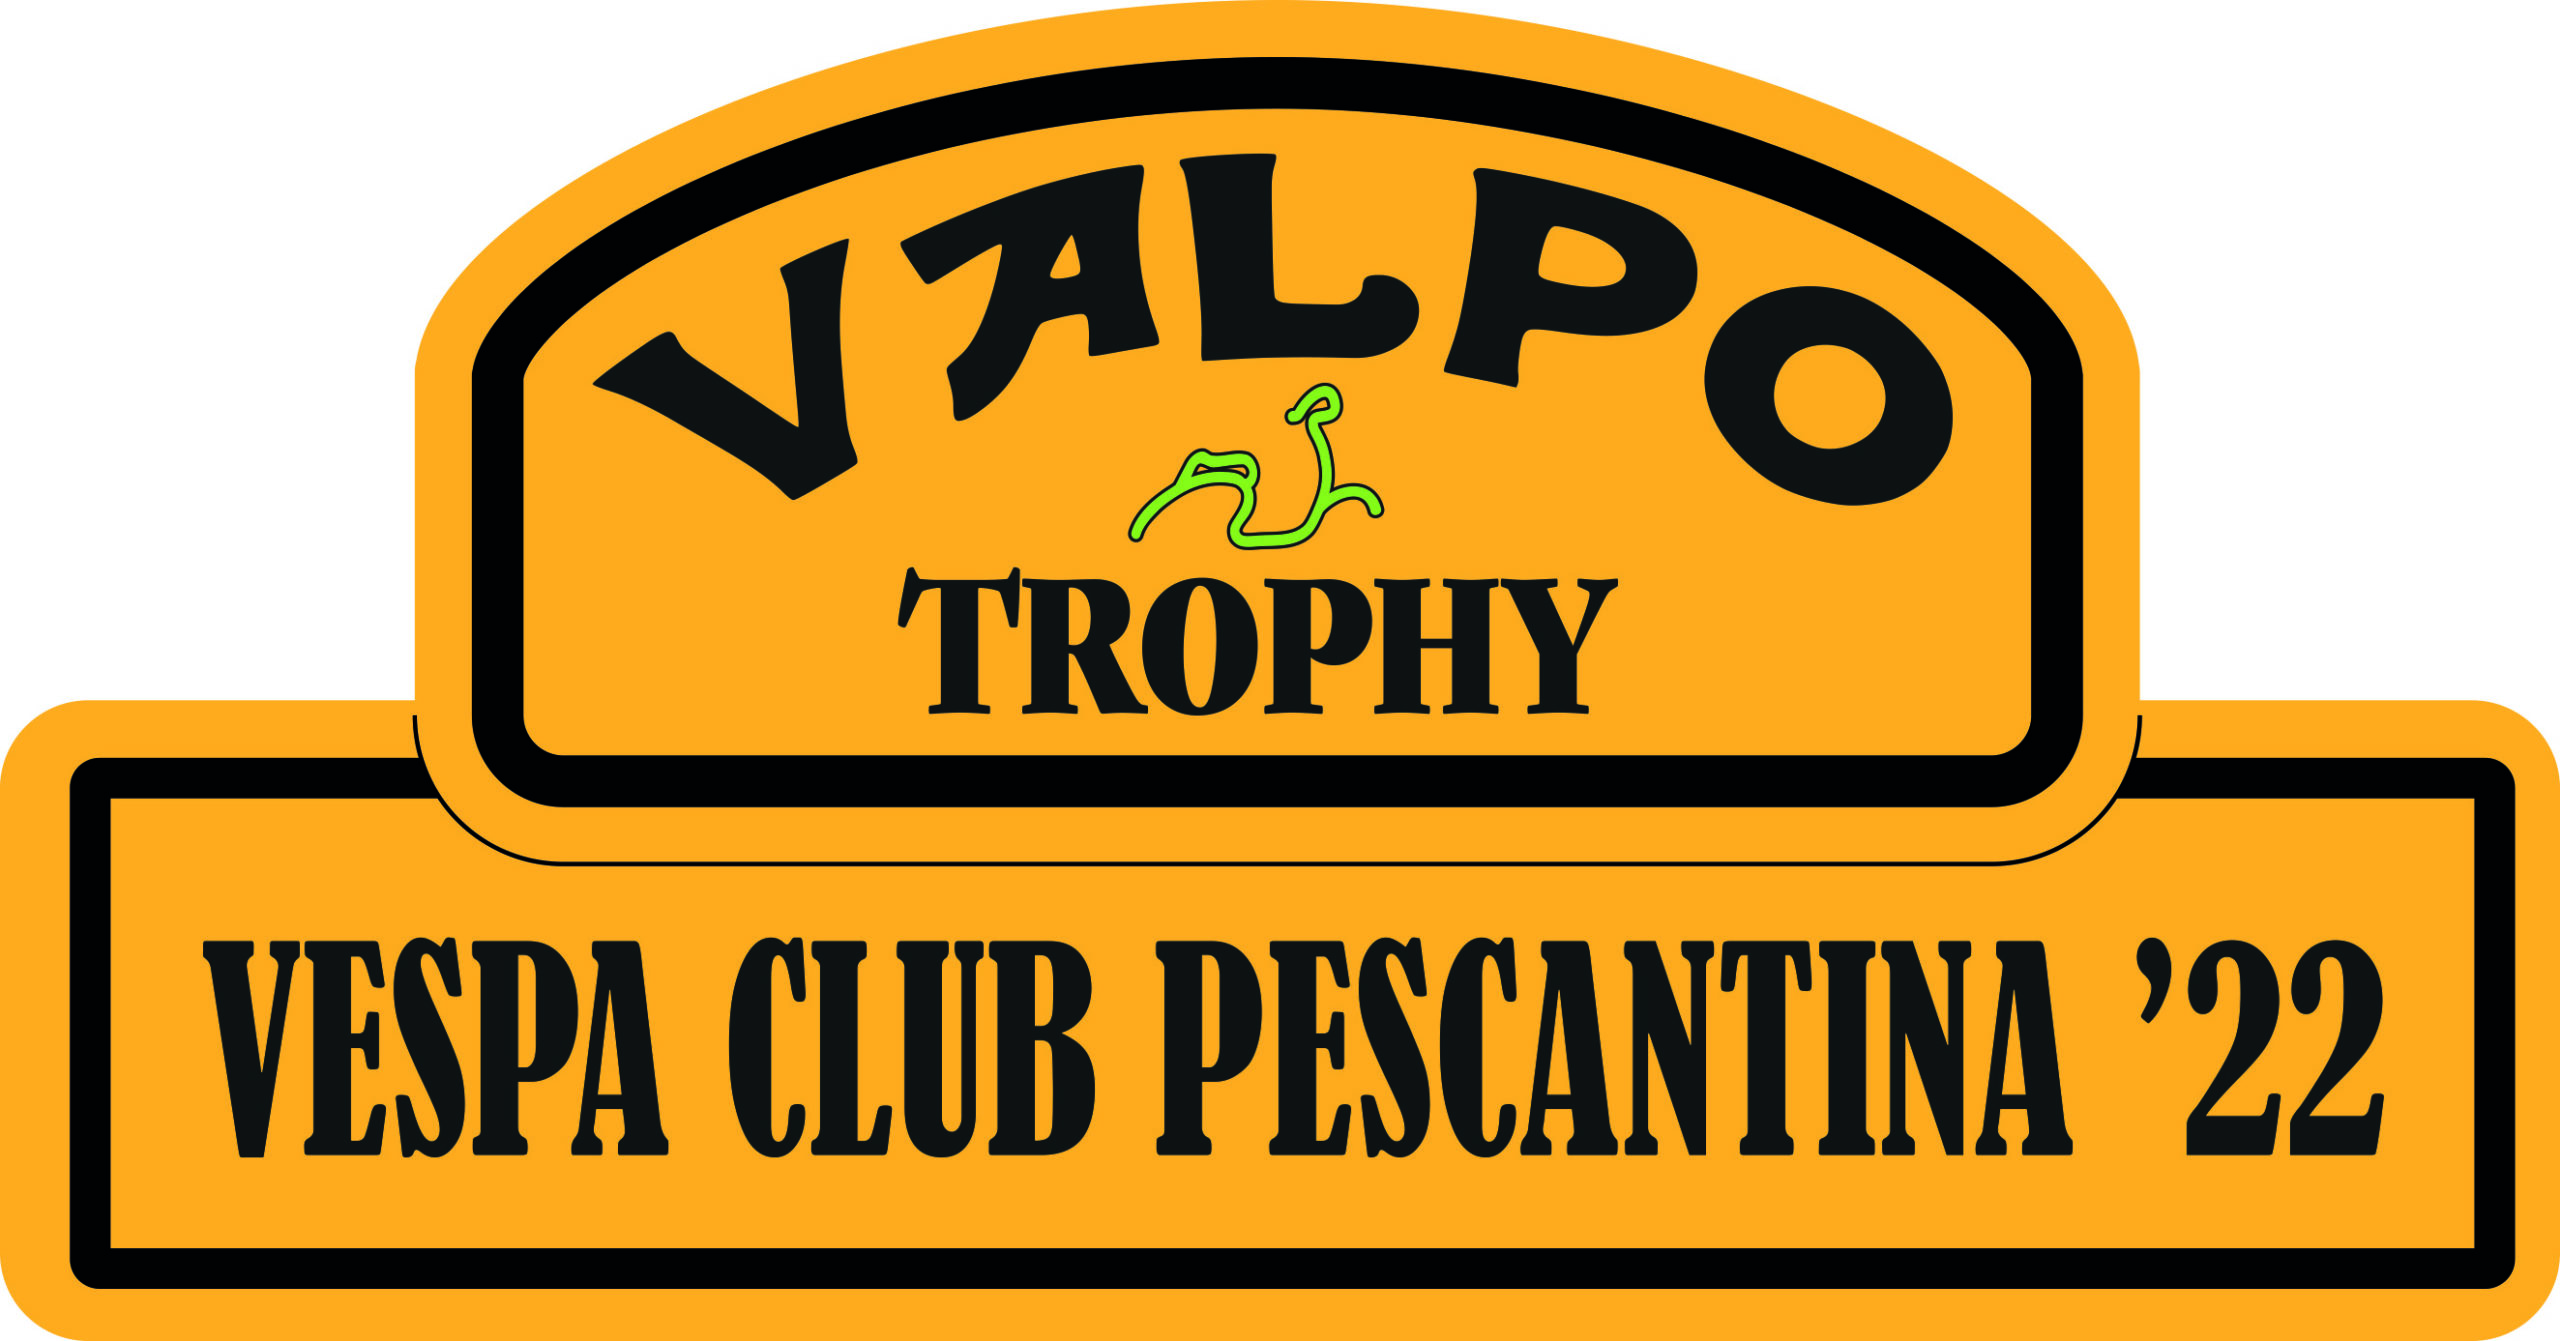 Logo Valpo Trophy 2022 Vespa Club Pescantina Valpolicella Verona